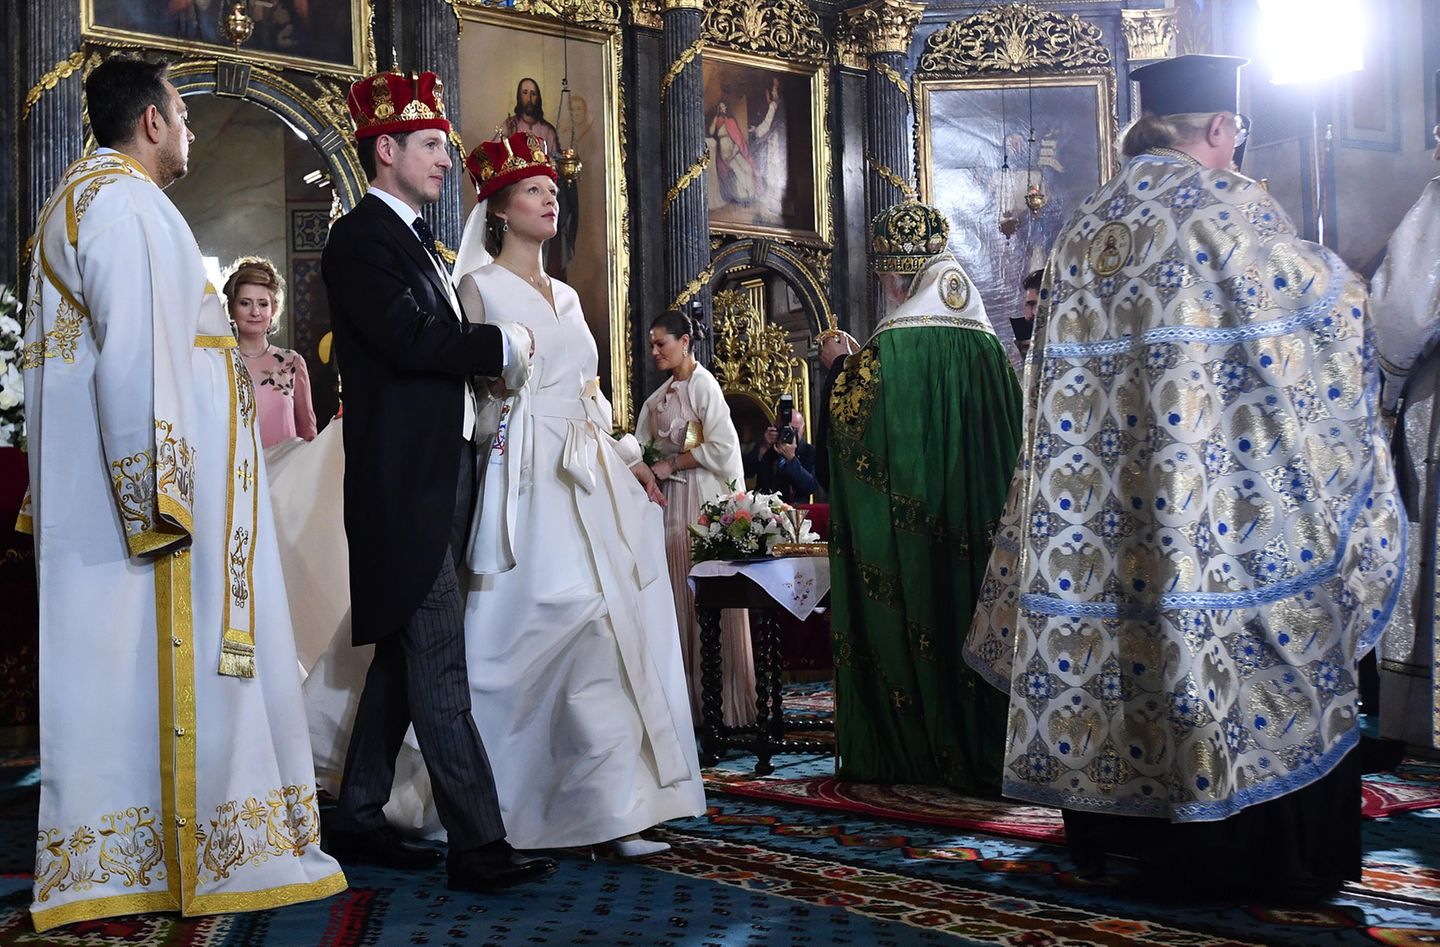 Die Zeremonie ist vollbracht. Philip und Danica sind nun frisch gekrönt - aber nur zum Ehepaar. Denn die prächtigen Kronen haben nichts mit seiner Abstimmung zu tun, sondern vielmehr mit einem Brauch bei einer serbisch-orthodoxen Hochzeit.